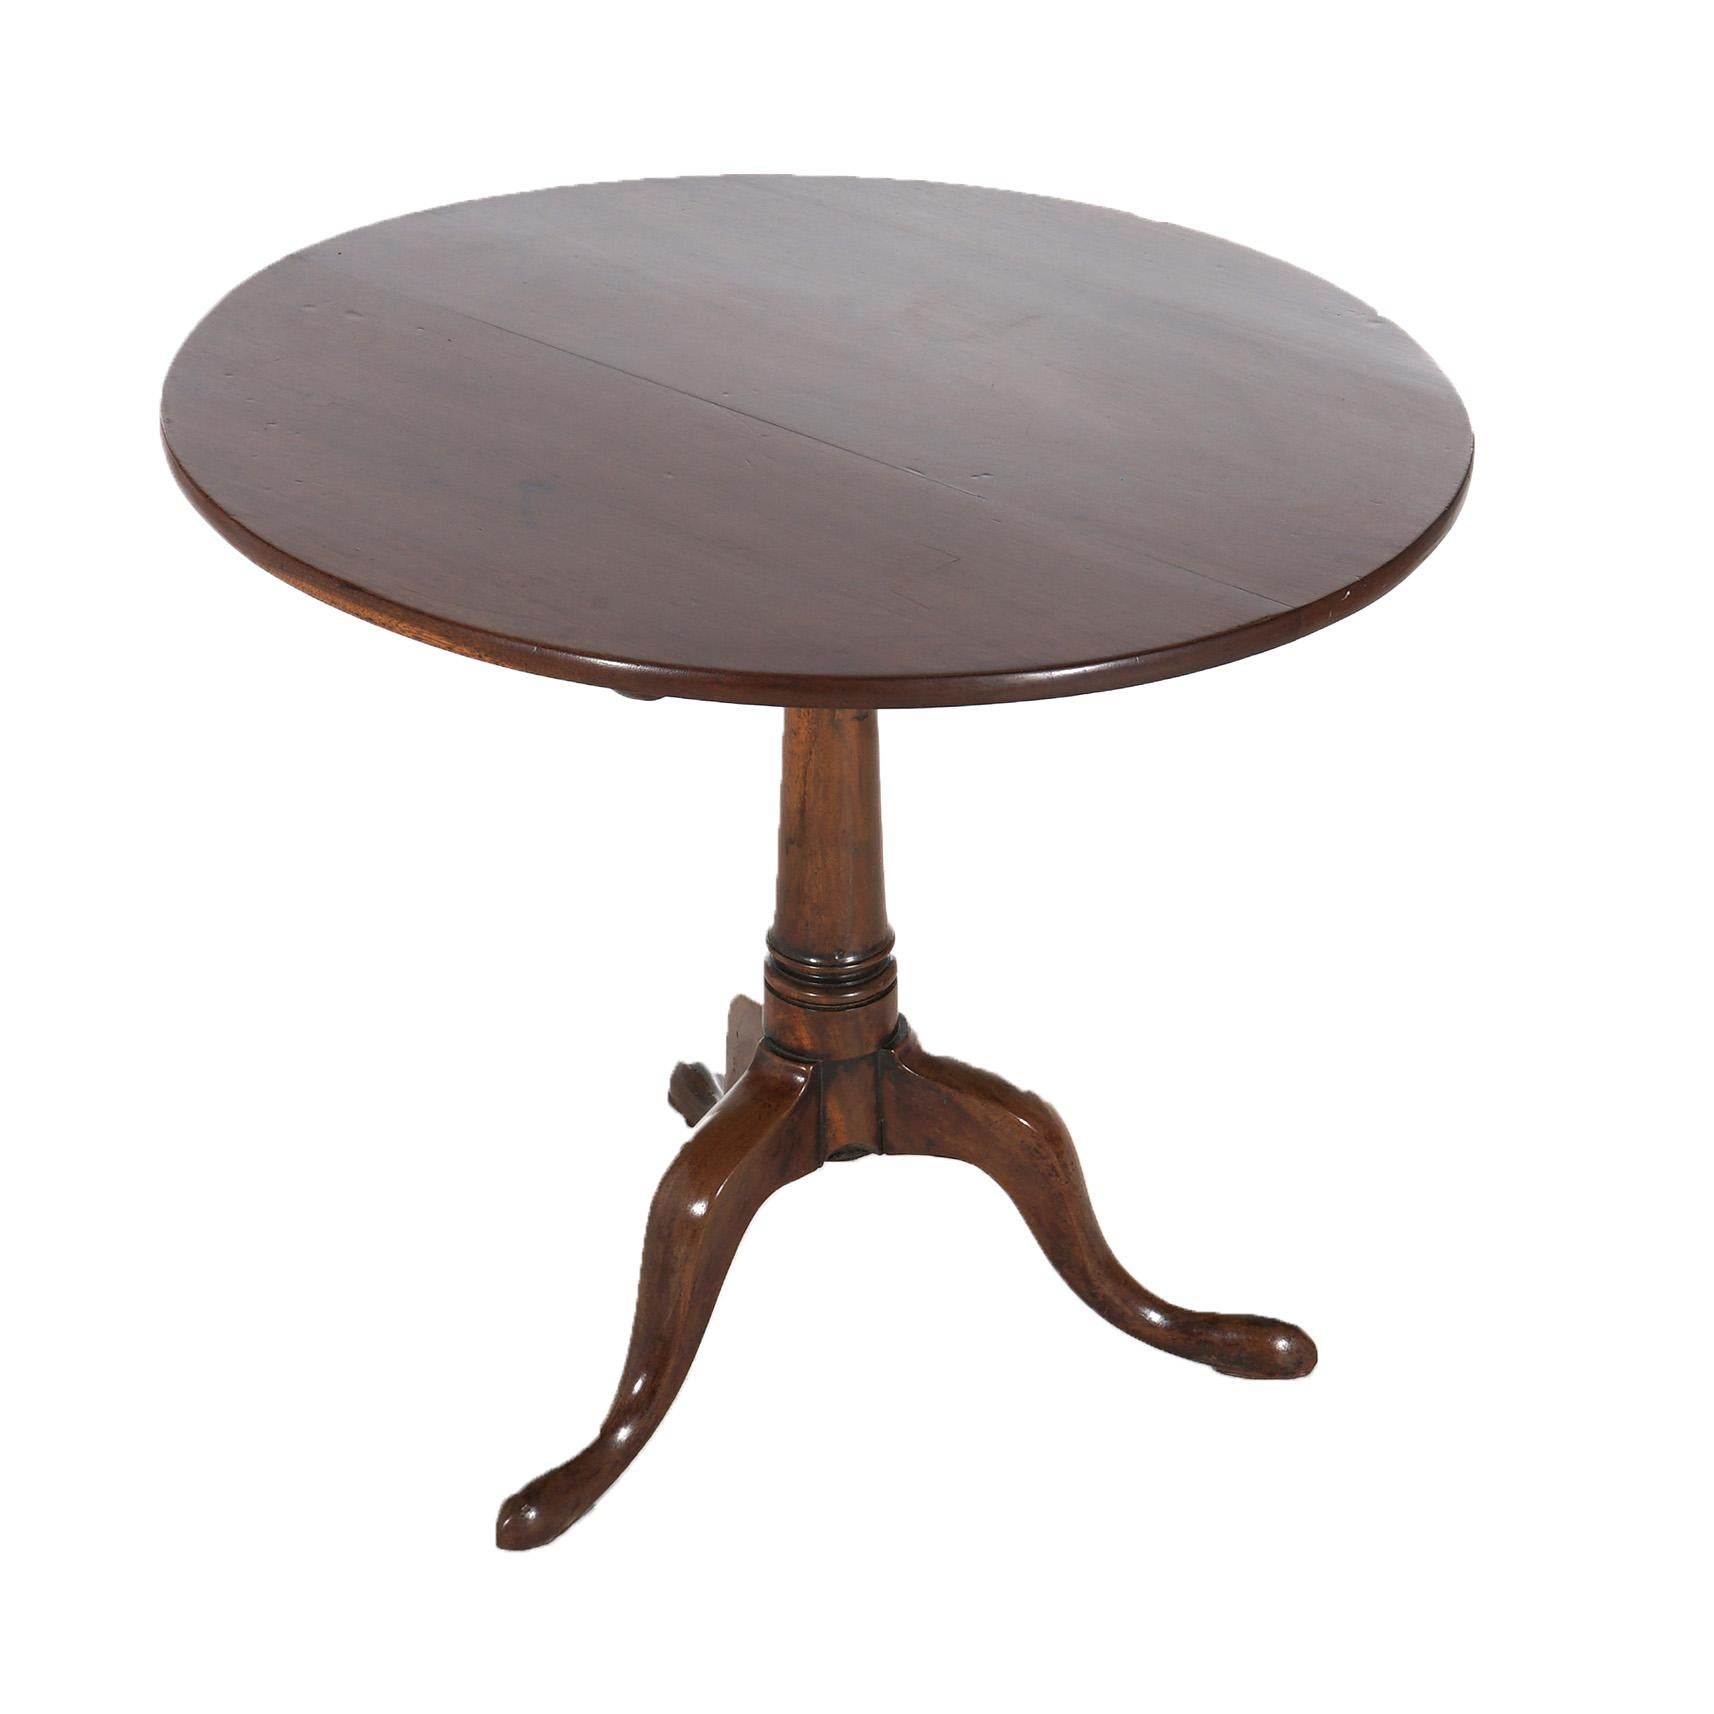 18. Jahrhundert Antike Queen Anne Nussbaum Tilt Top Tisch mit gedrehten Säule auf Cabriole Beine in Pad Füße enden, C1770

Maße - 27,5 